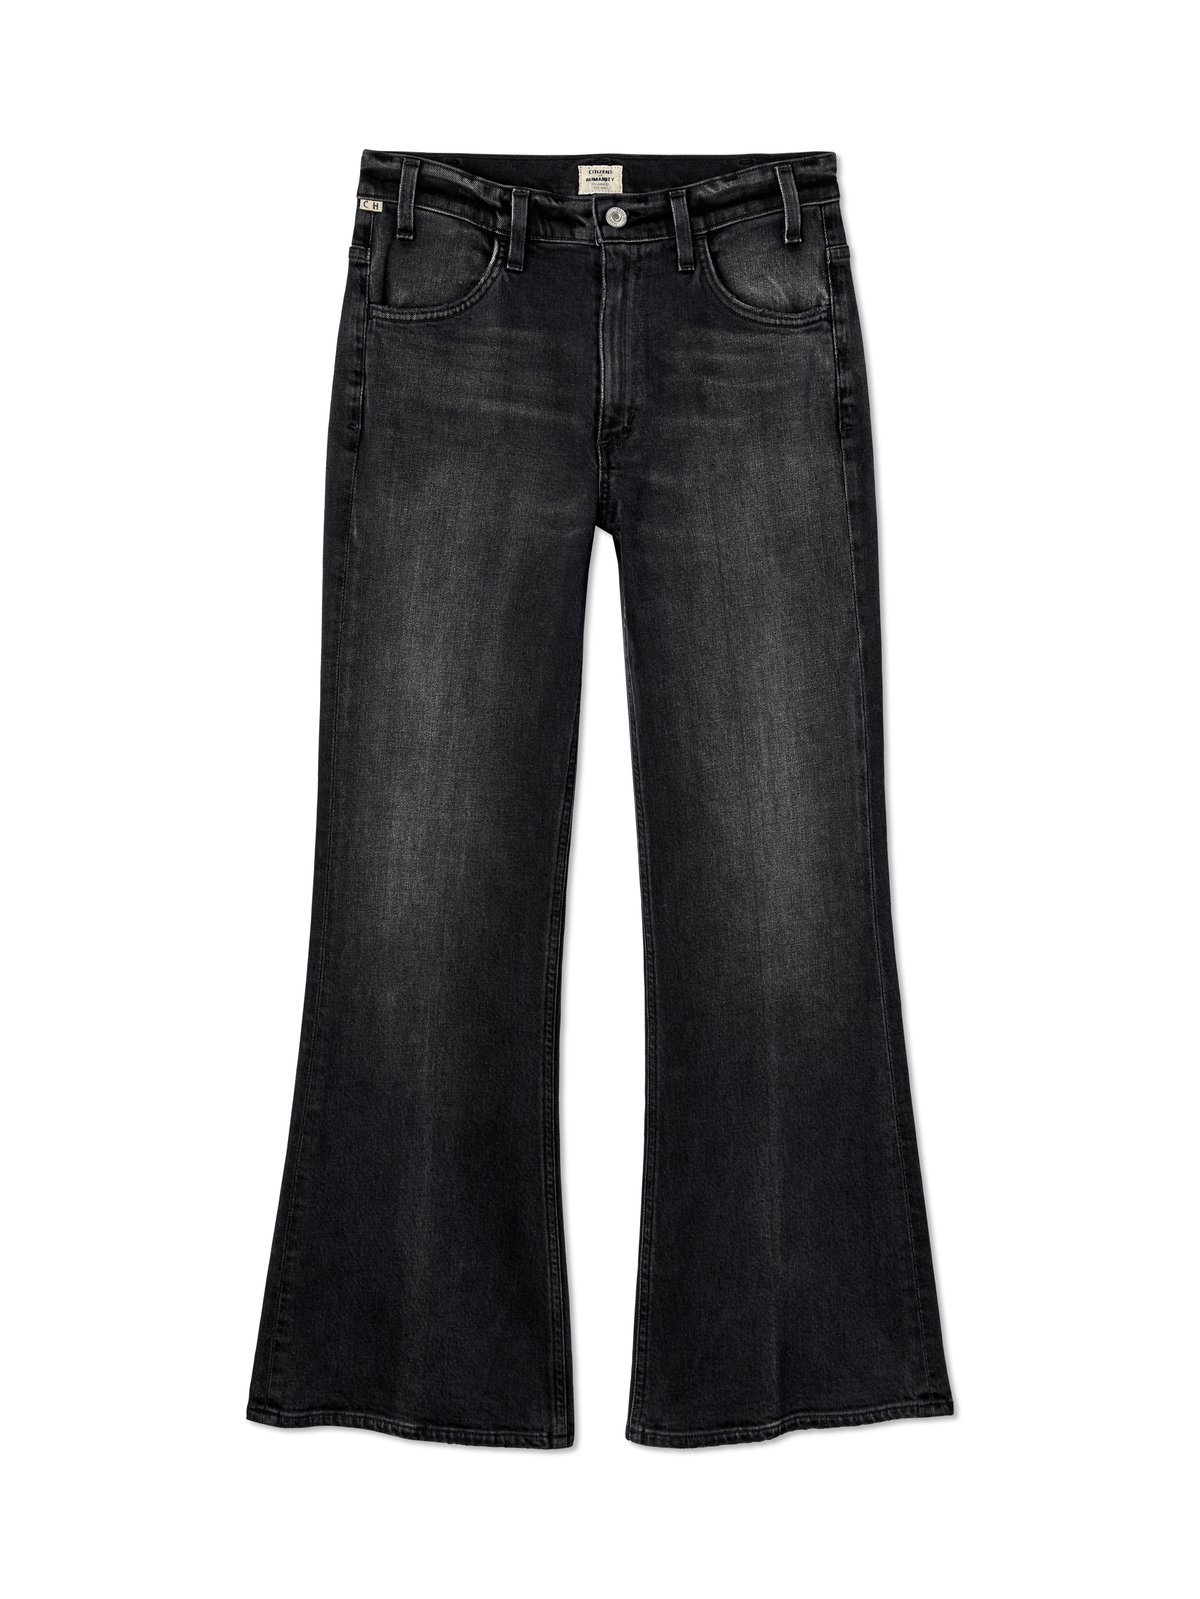 på trods af Forbløffe Validering Citizens of Humanity Amelia High Rise Vintage Cropped Flare Jeans | Verishop